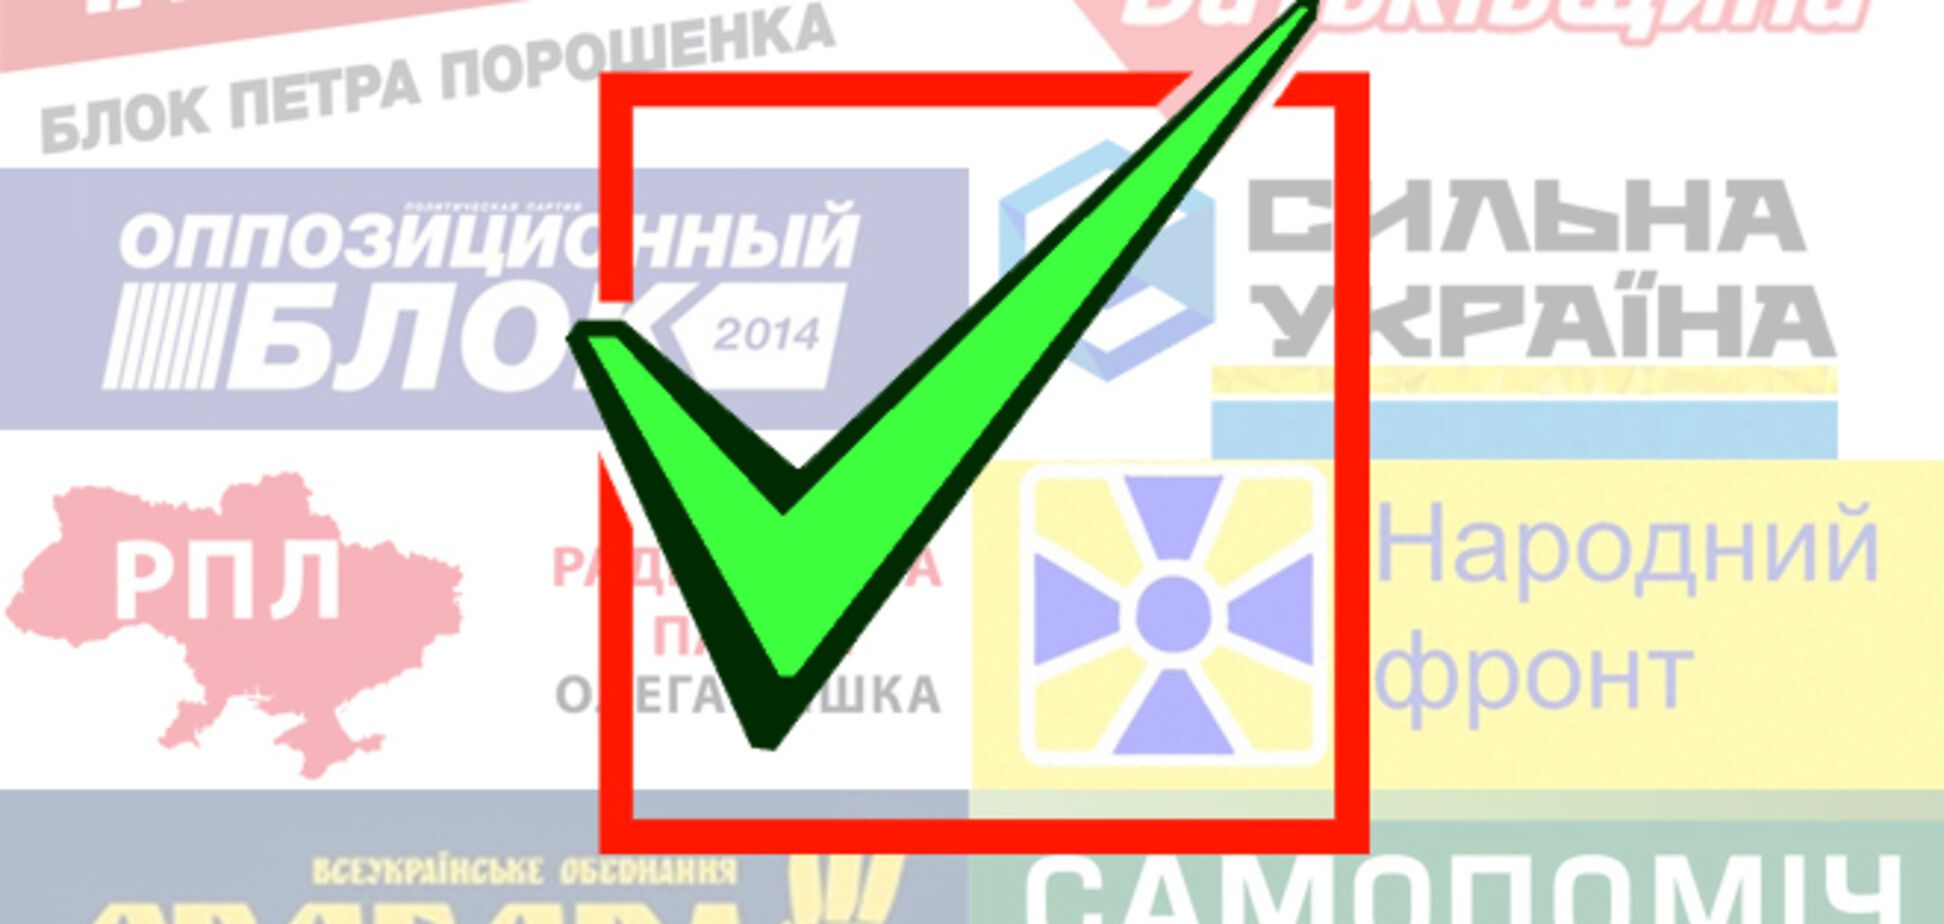 Как партии влияют на подсознание украинцев: анализ агитационных видео